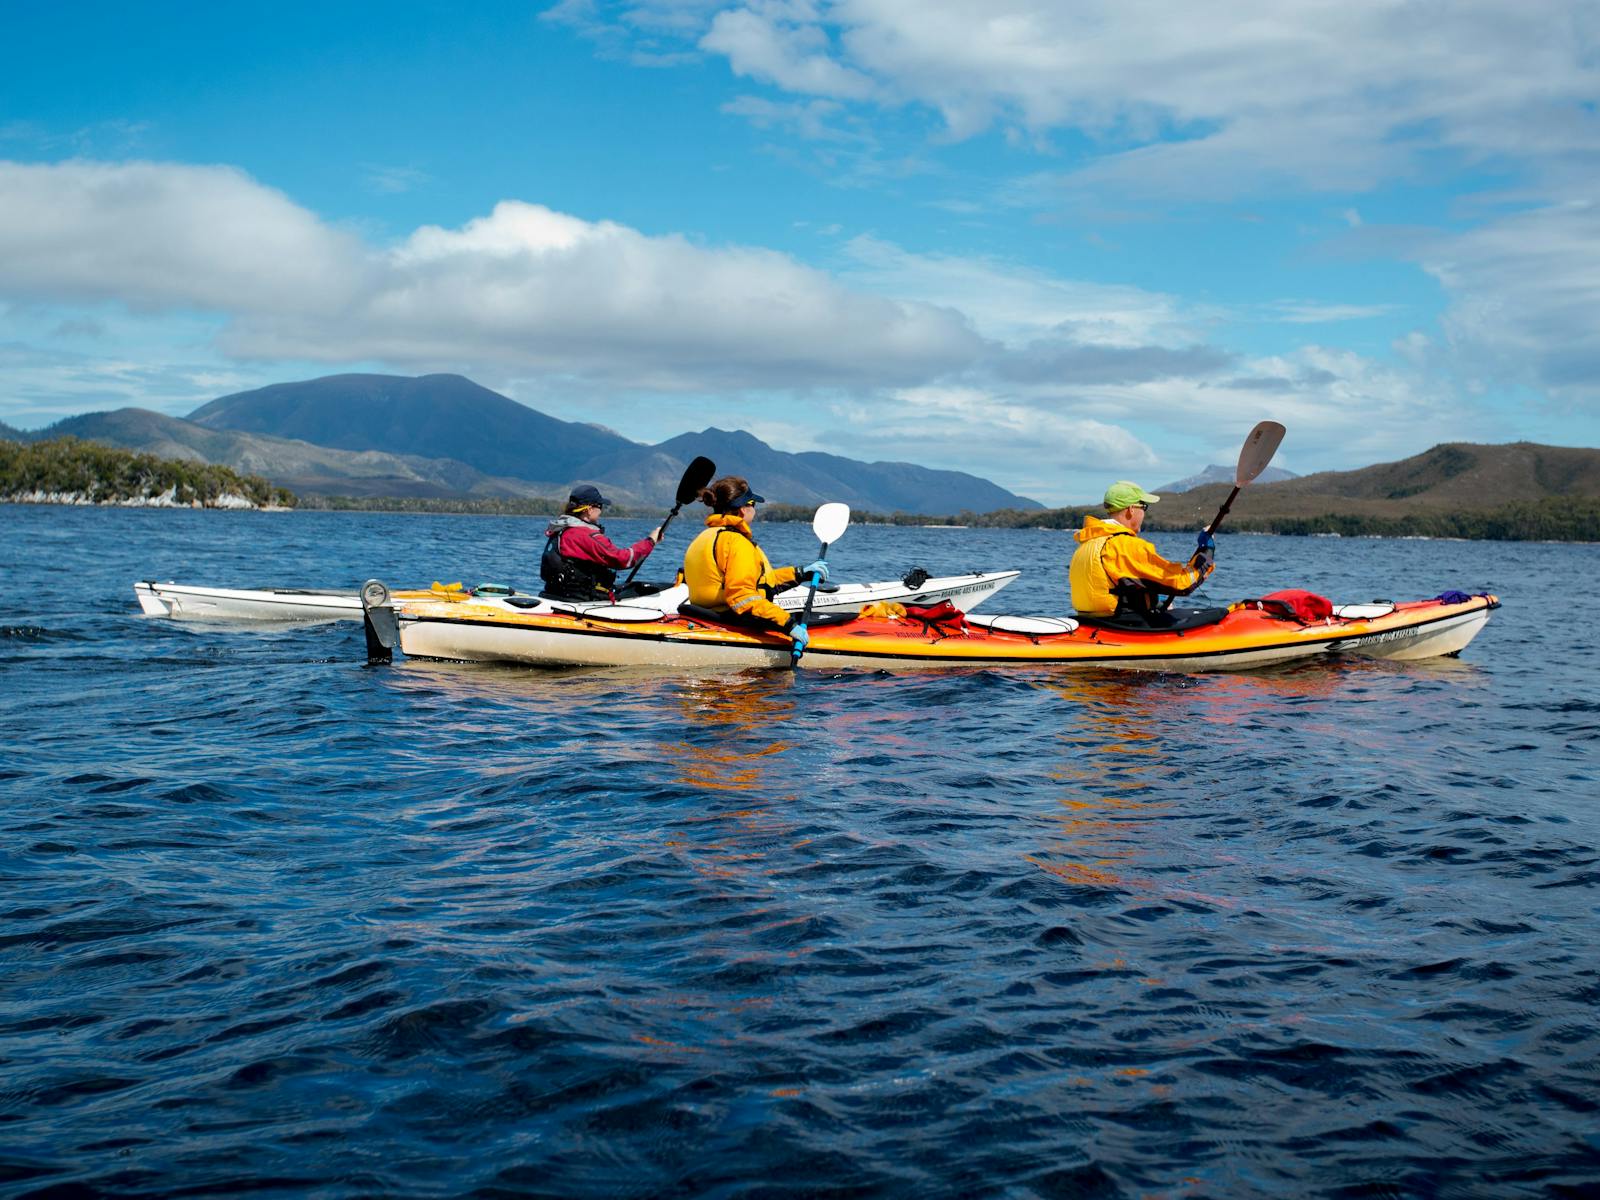 Kayaking on Bathurst Harbour in Southwest Tasmania